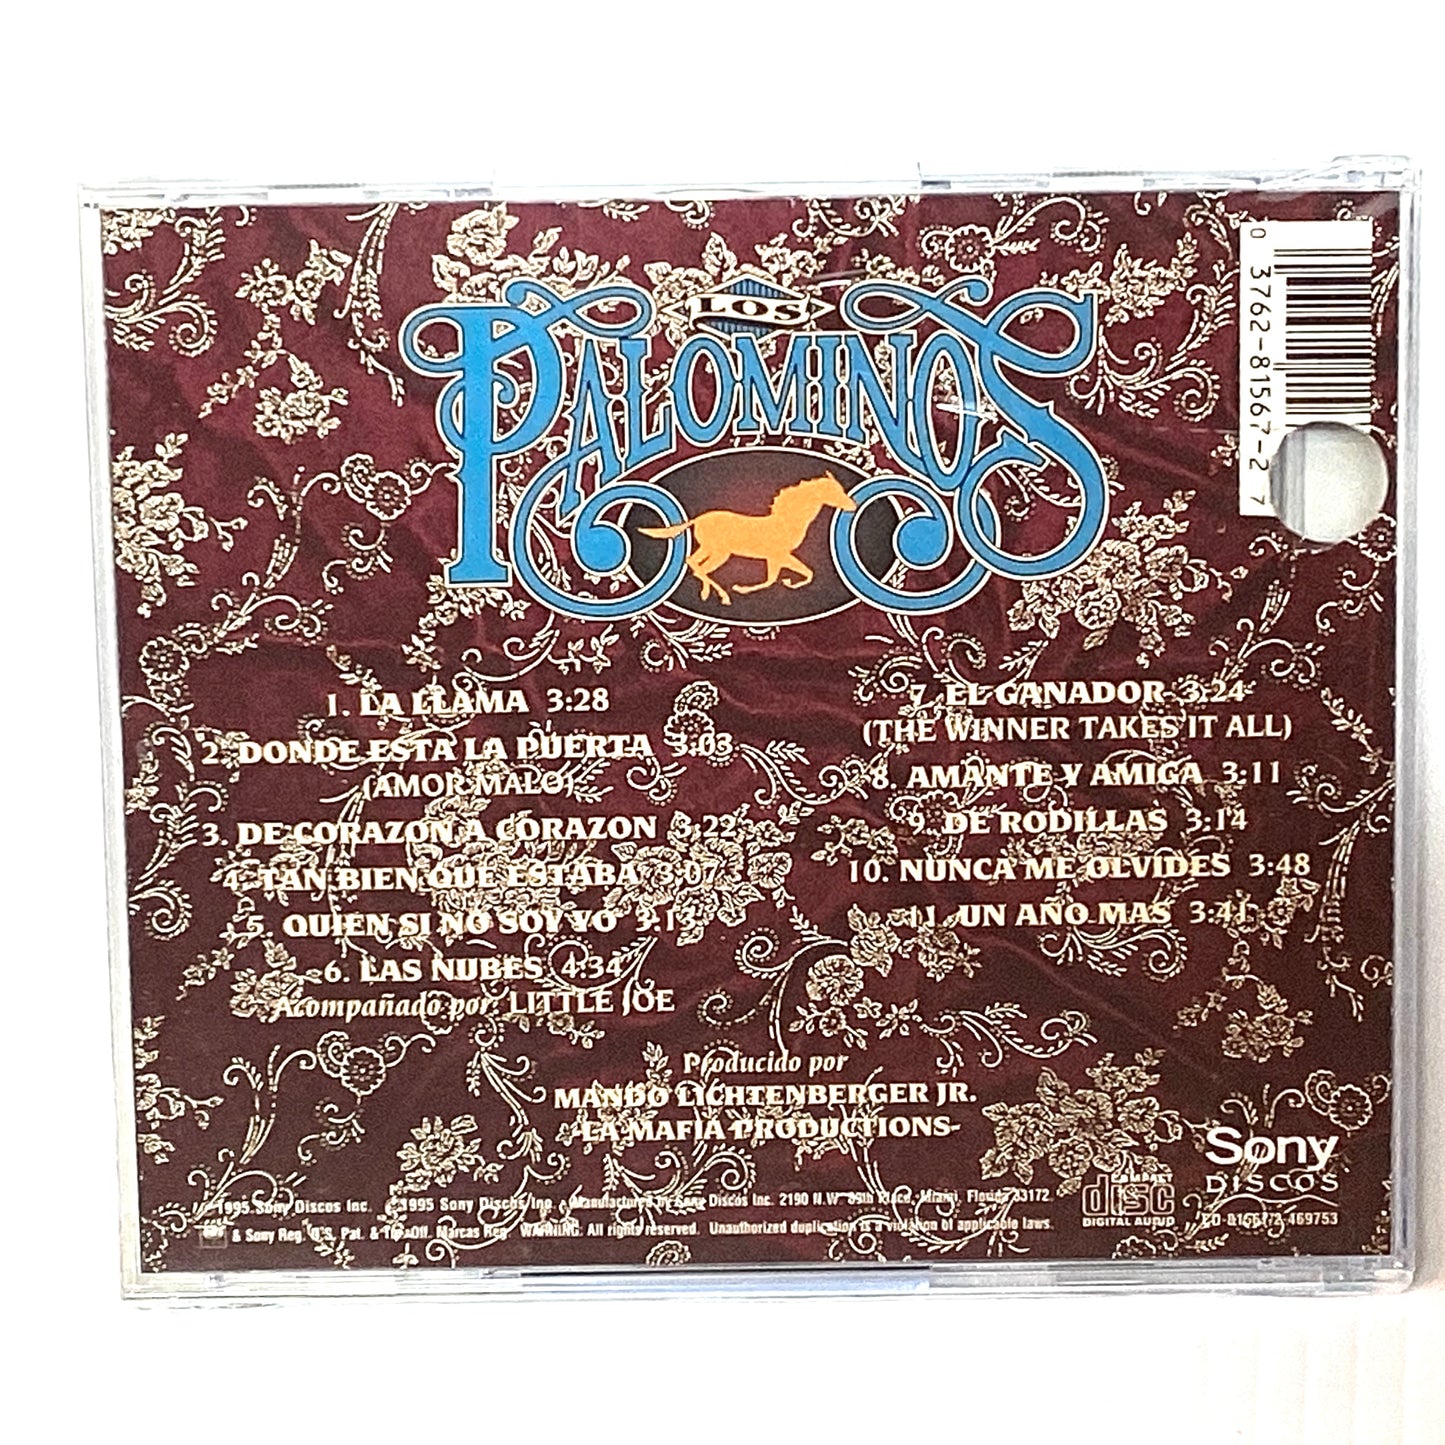 Los Palominos - El Ganador (CD)